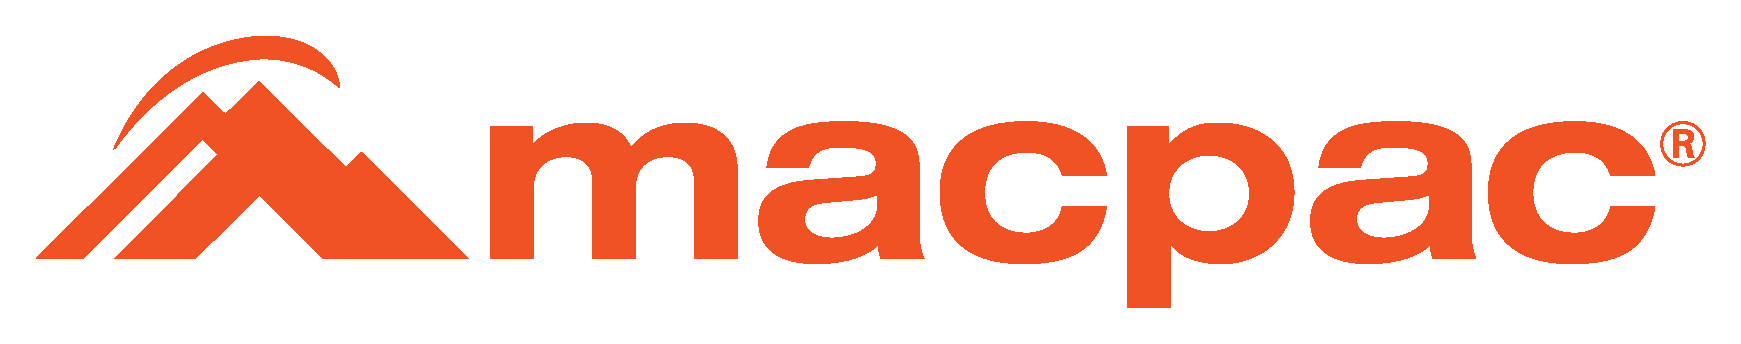 Macpac_orange.png